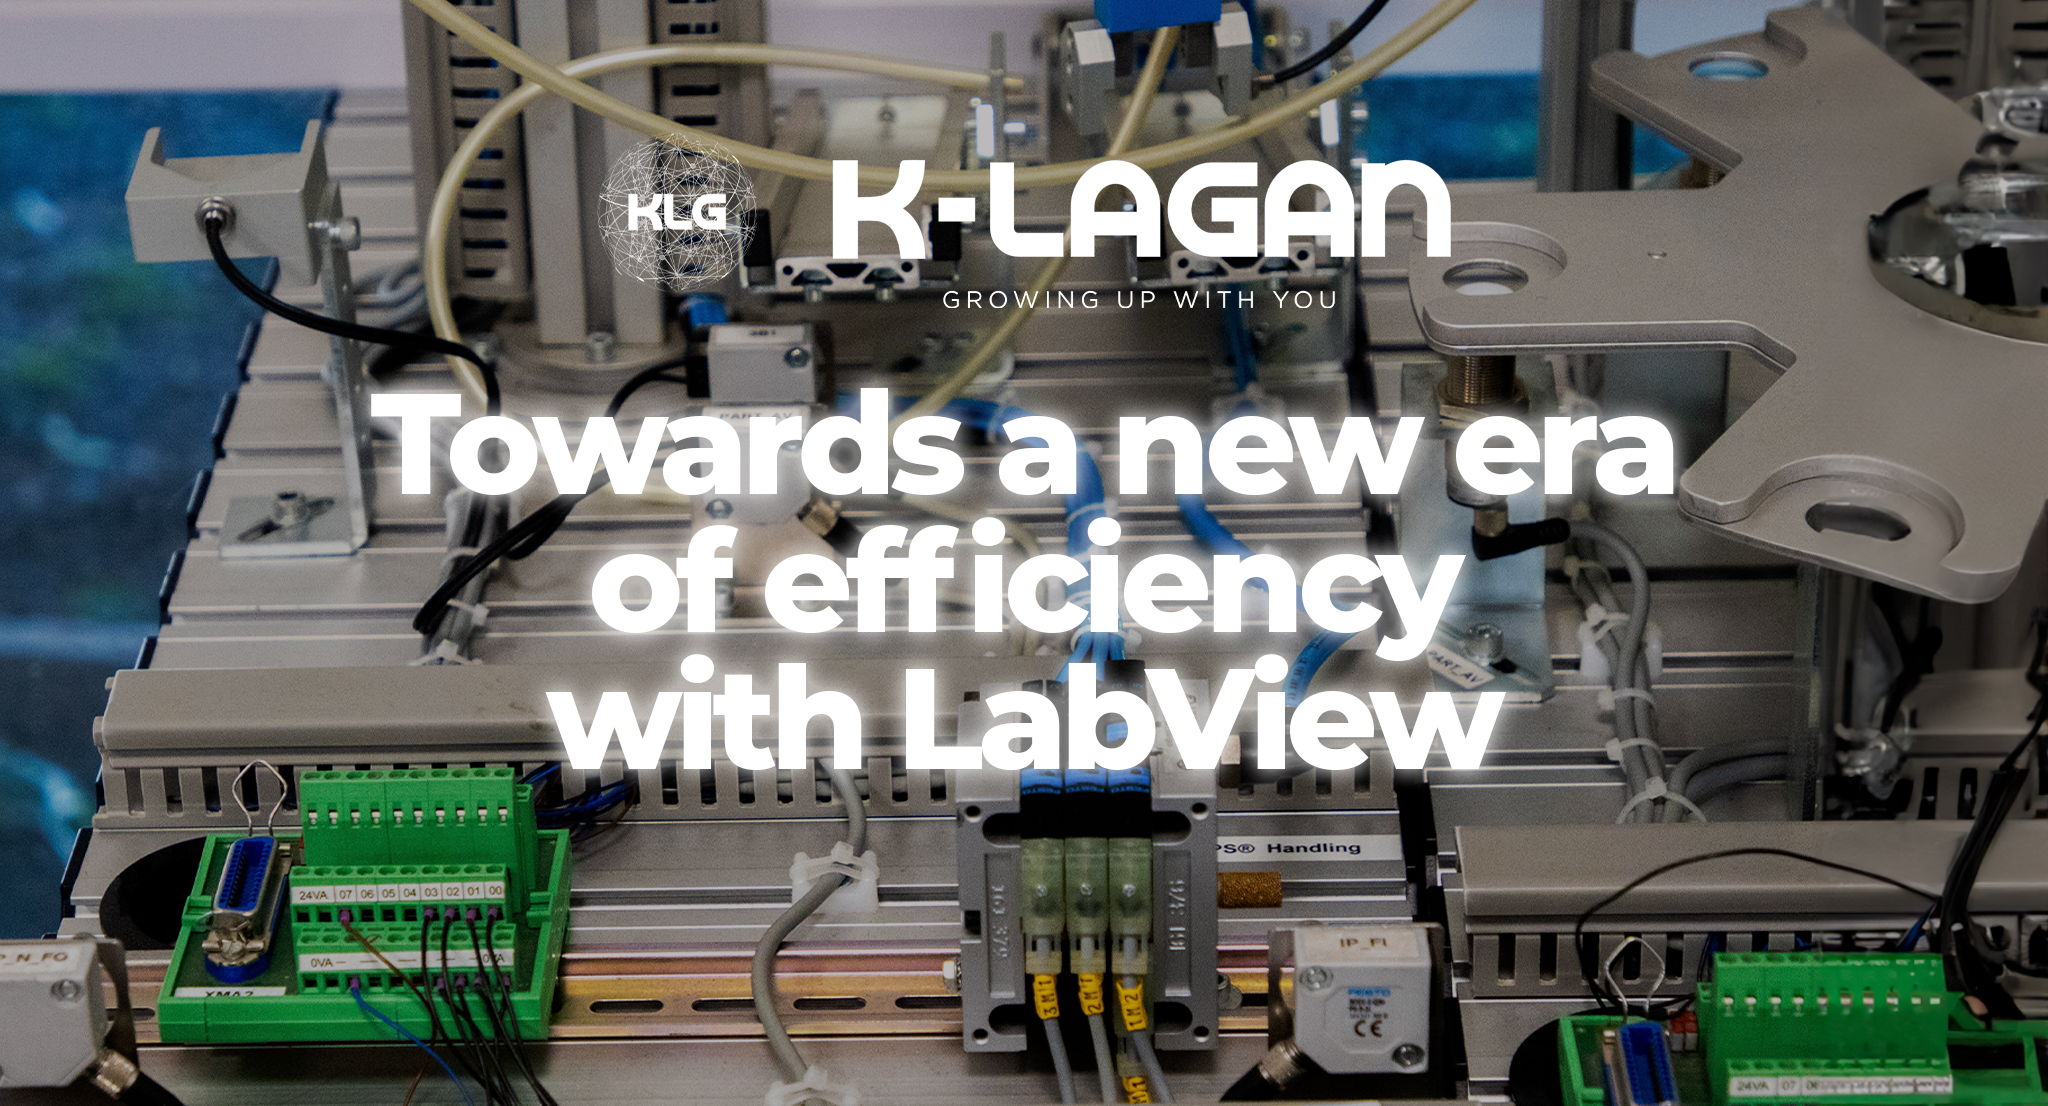 Migración de líneas de test, hacia una nueva era de eficiencia y estandarización con LabVIEW